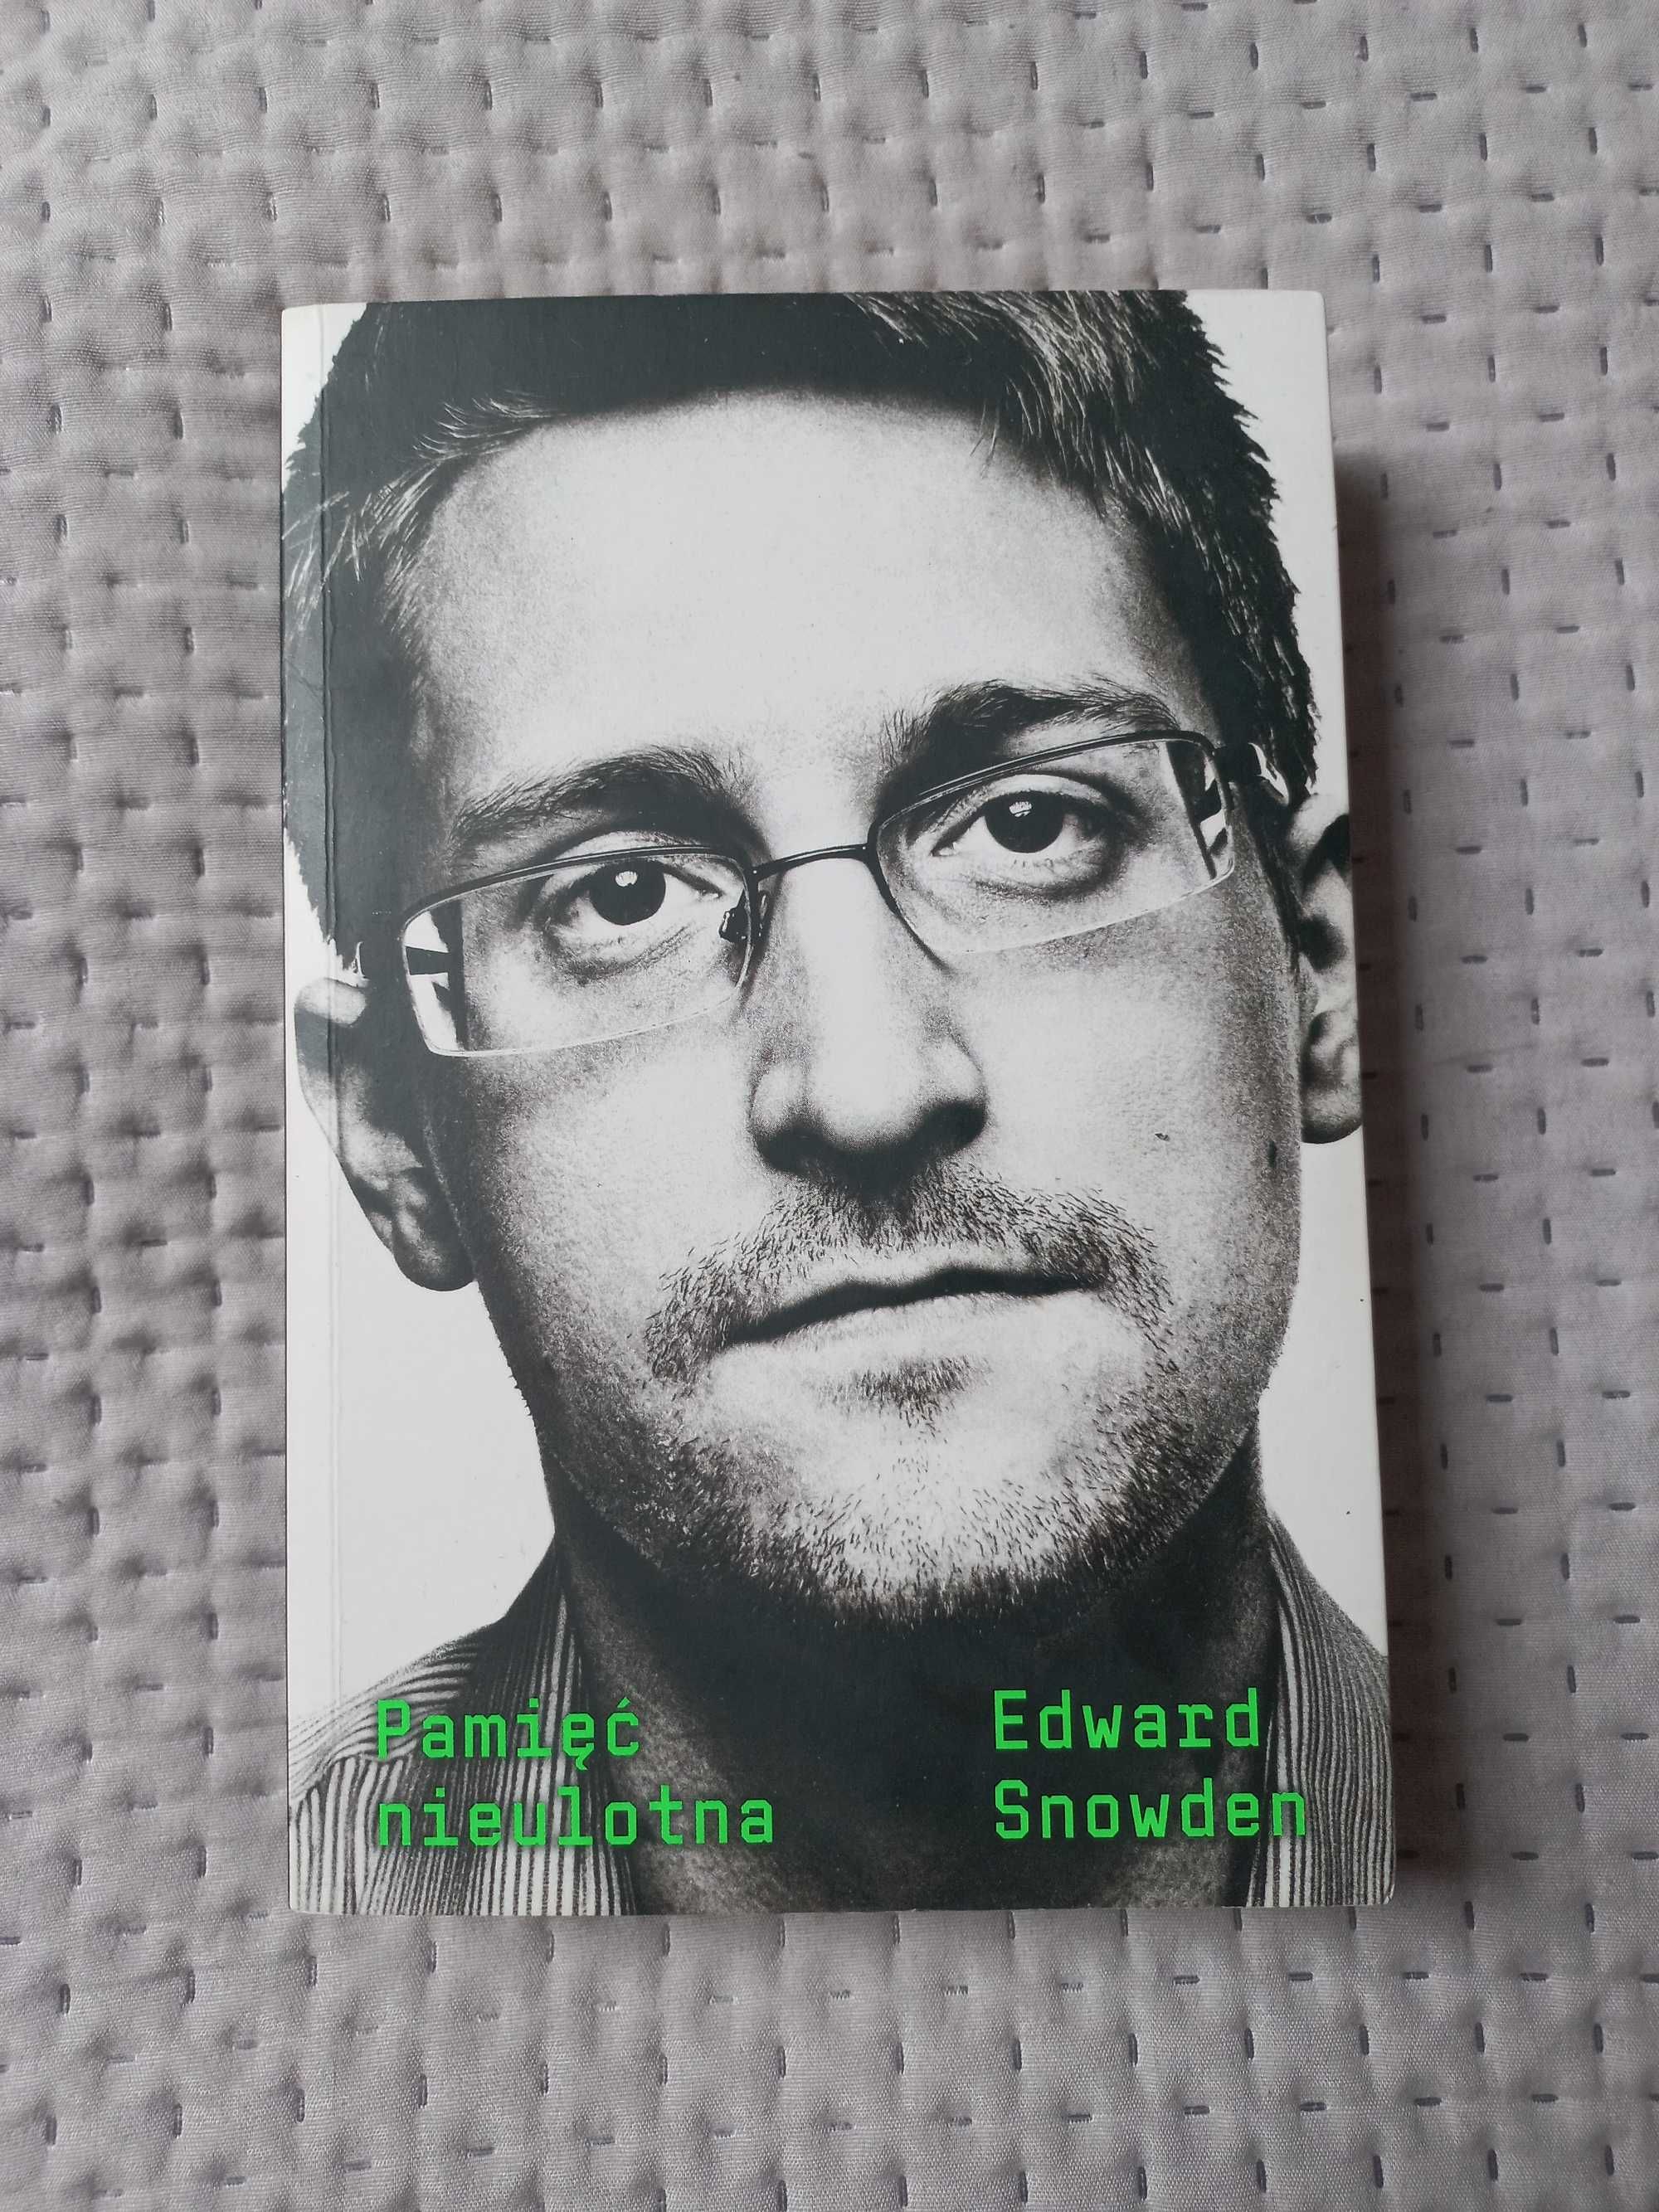 Książka "Pamięć nieulotna" Edward Snowden